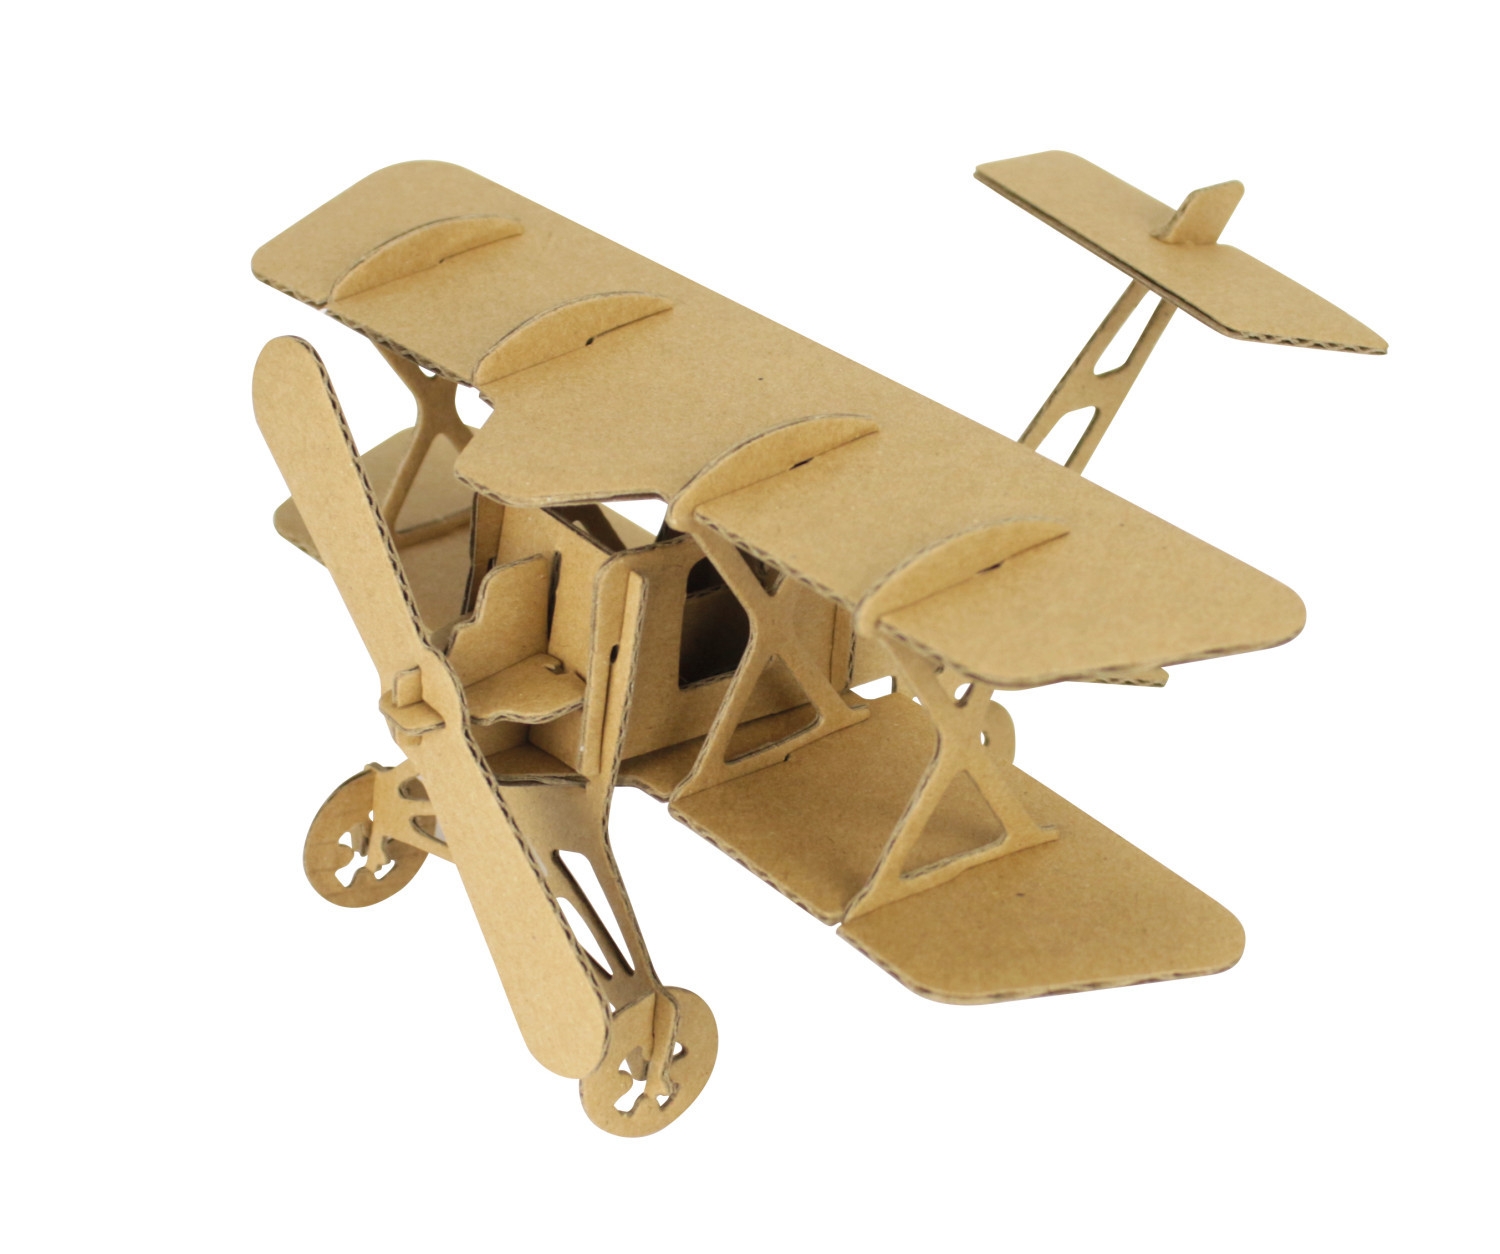 Maquette en carton Avion 13 x 16,5 x 9 cm - MegaCrea DIY ref 4743